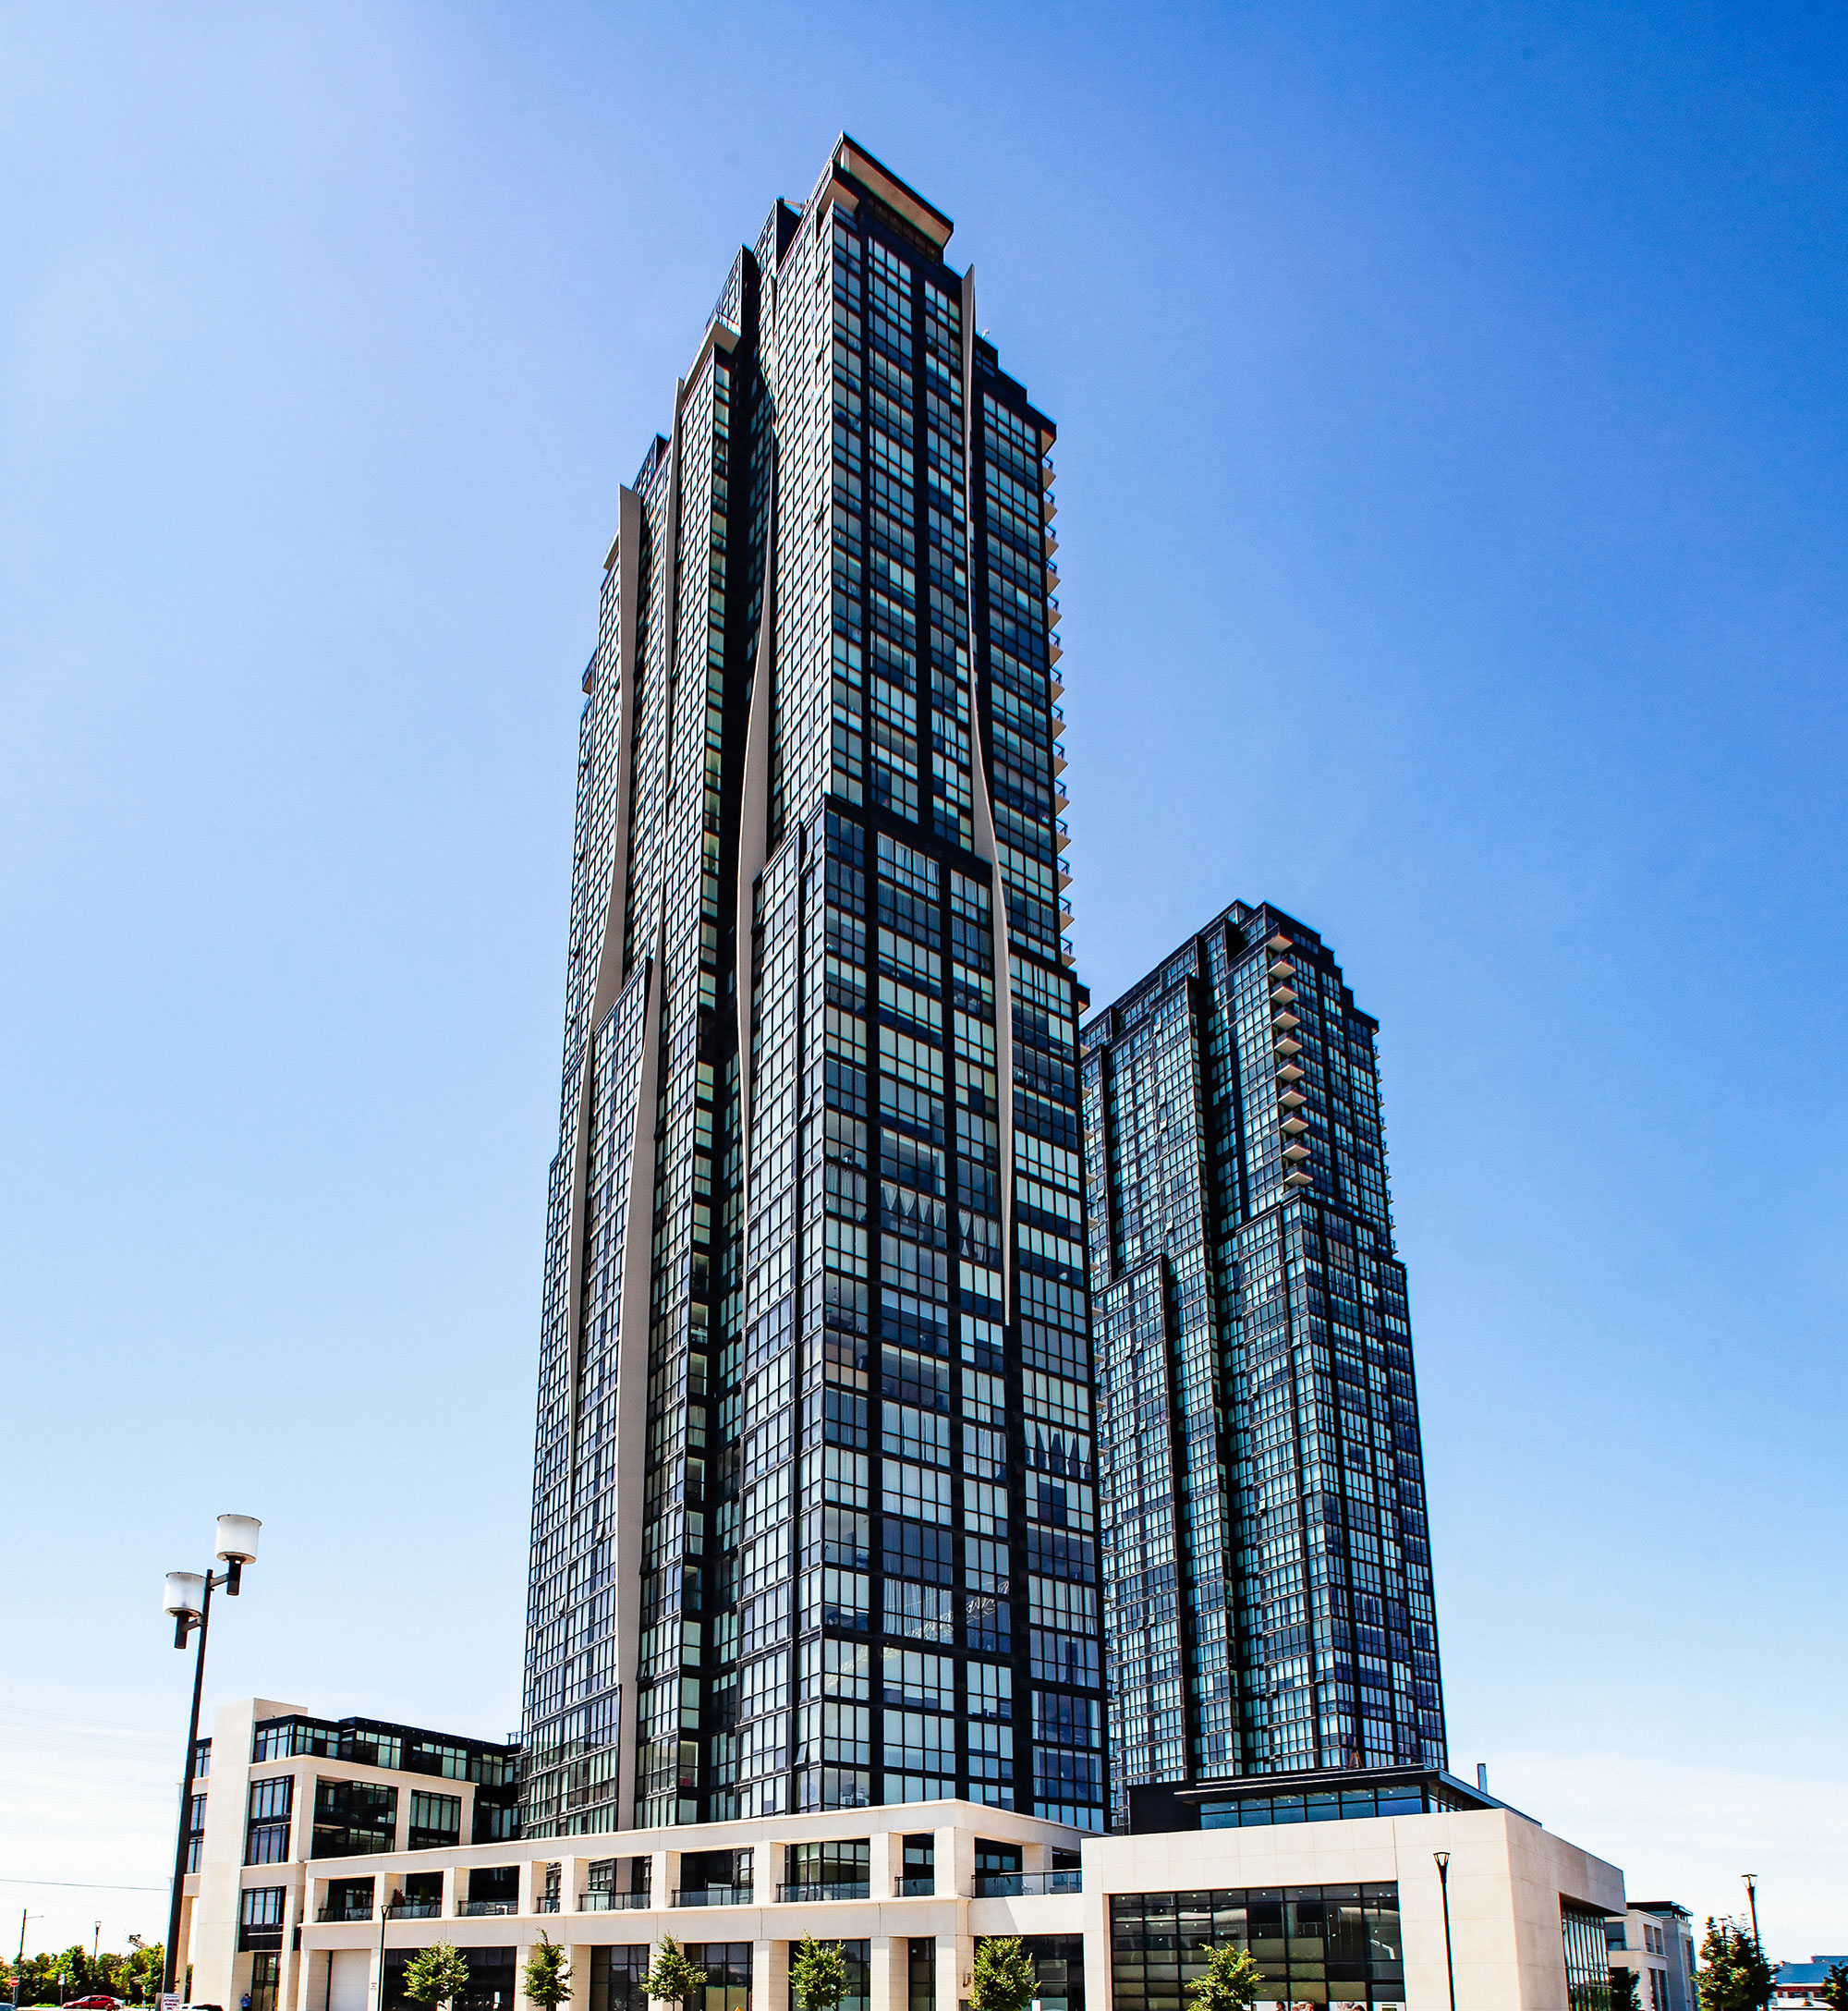 37 storey, 353 suite condominium with 3 levels of underground parking.